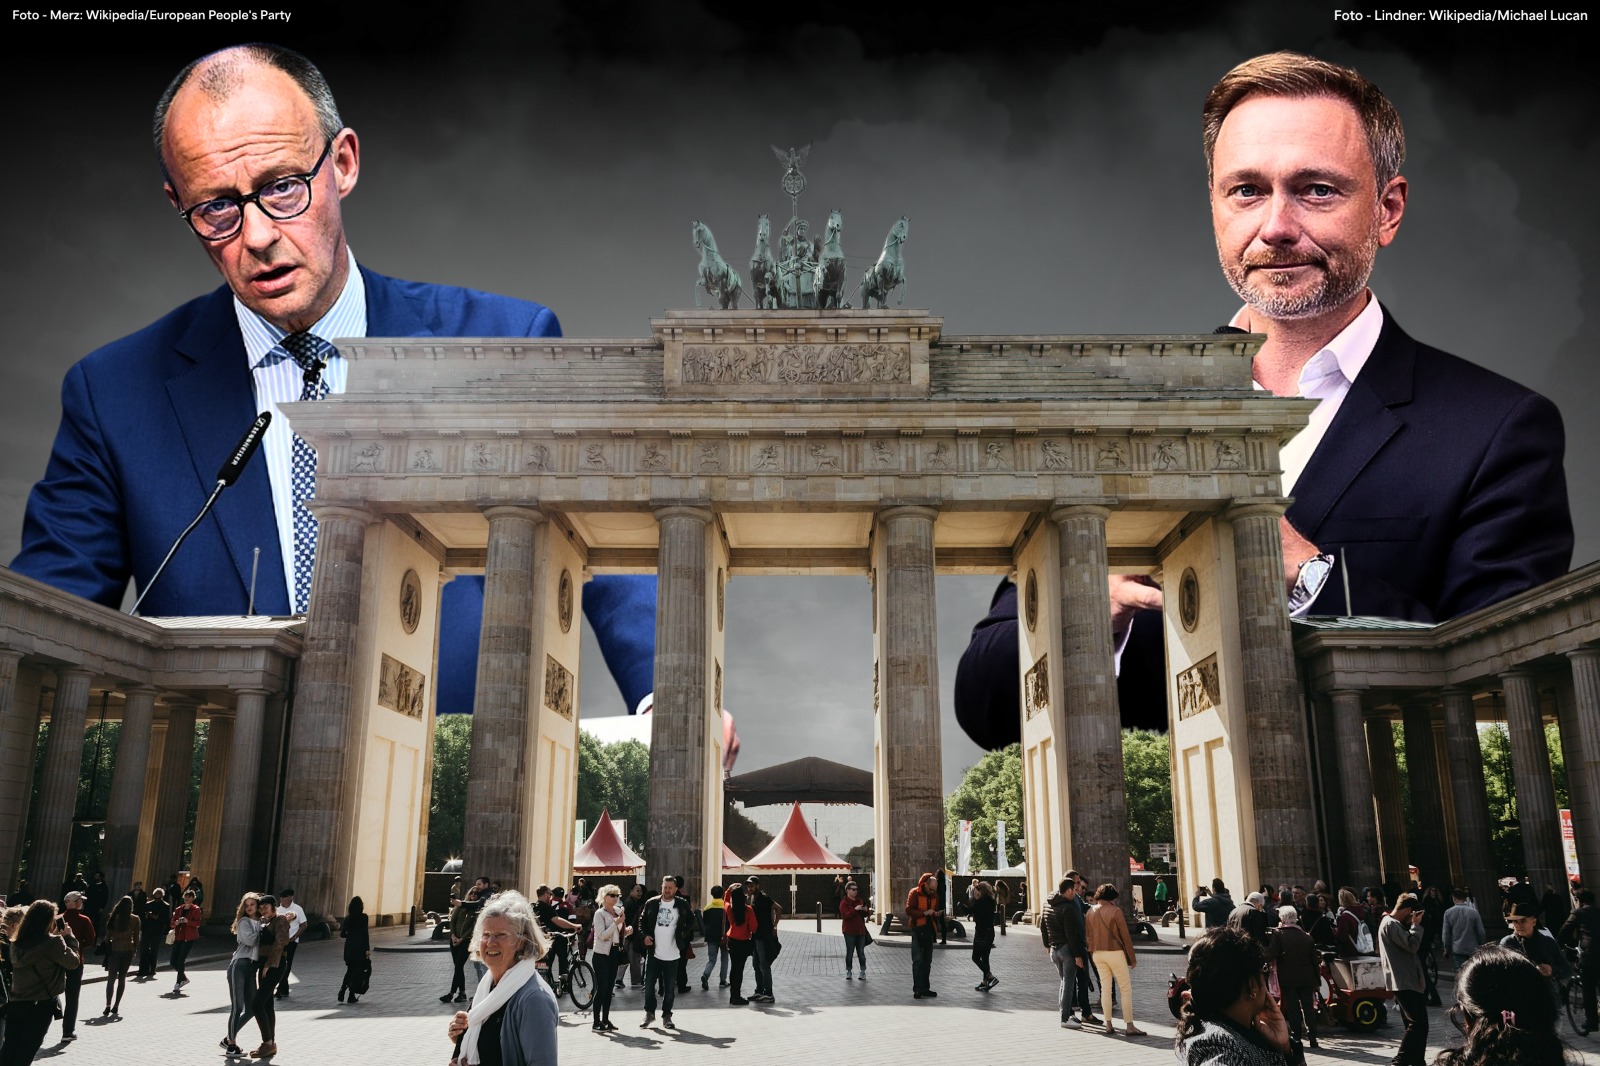 Die deutsche Schuldenbremse könnte die europäische Wirtschaft langfristig zerstören// Bild: Wikipedia/European People's party/Wikipedia/Michael Lucan